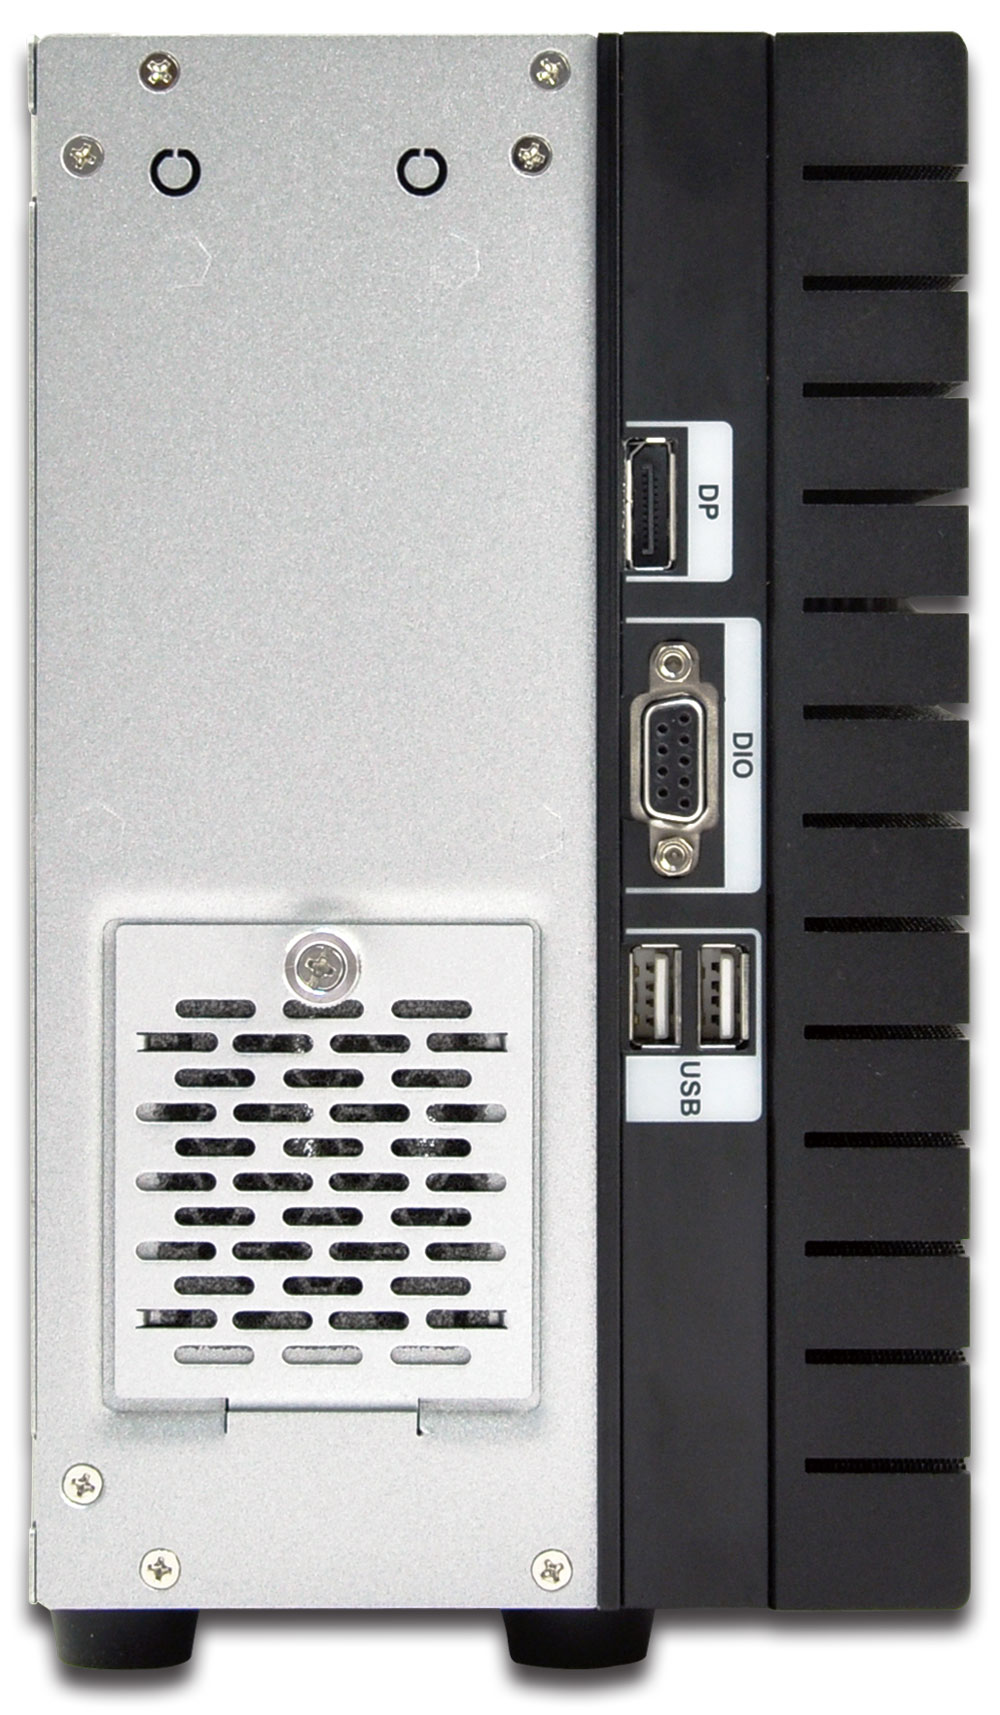 Box PC TANK-860-HM86i-i5-4G-2A-R10 Back